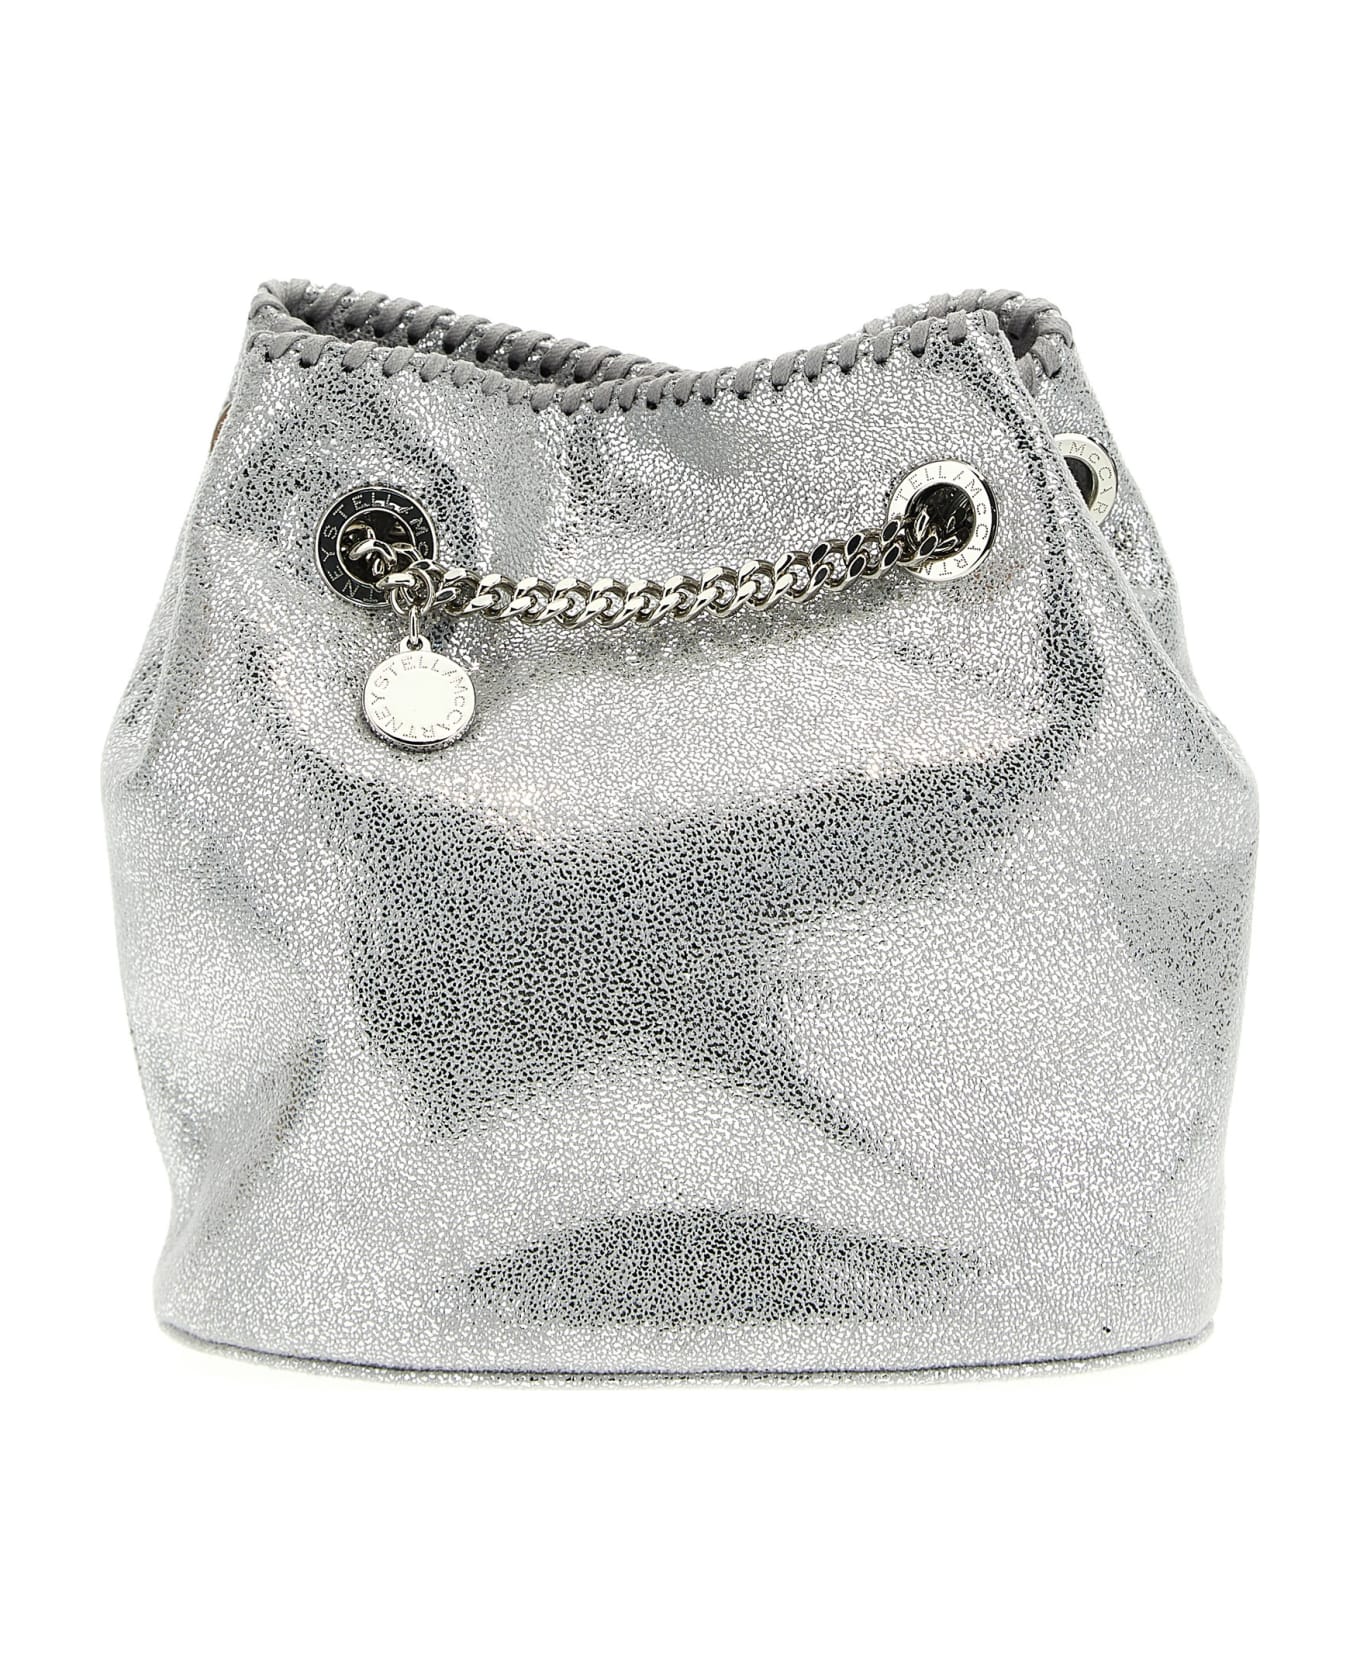 Stella McCartney 'falabella' Bucket Bag - Silver